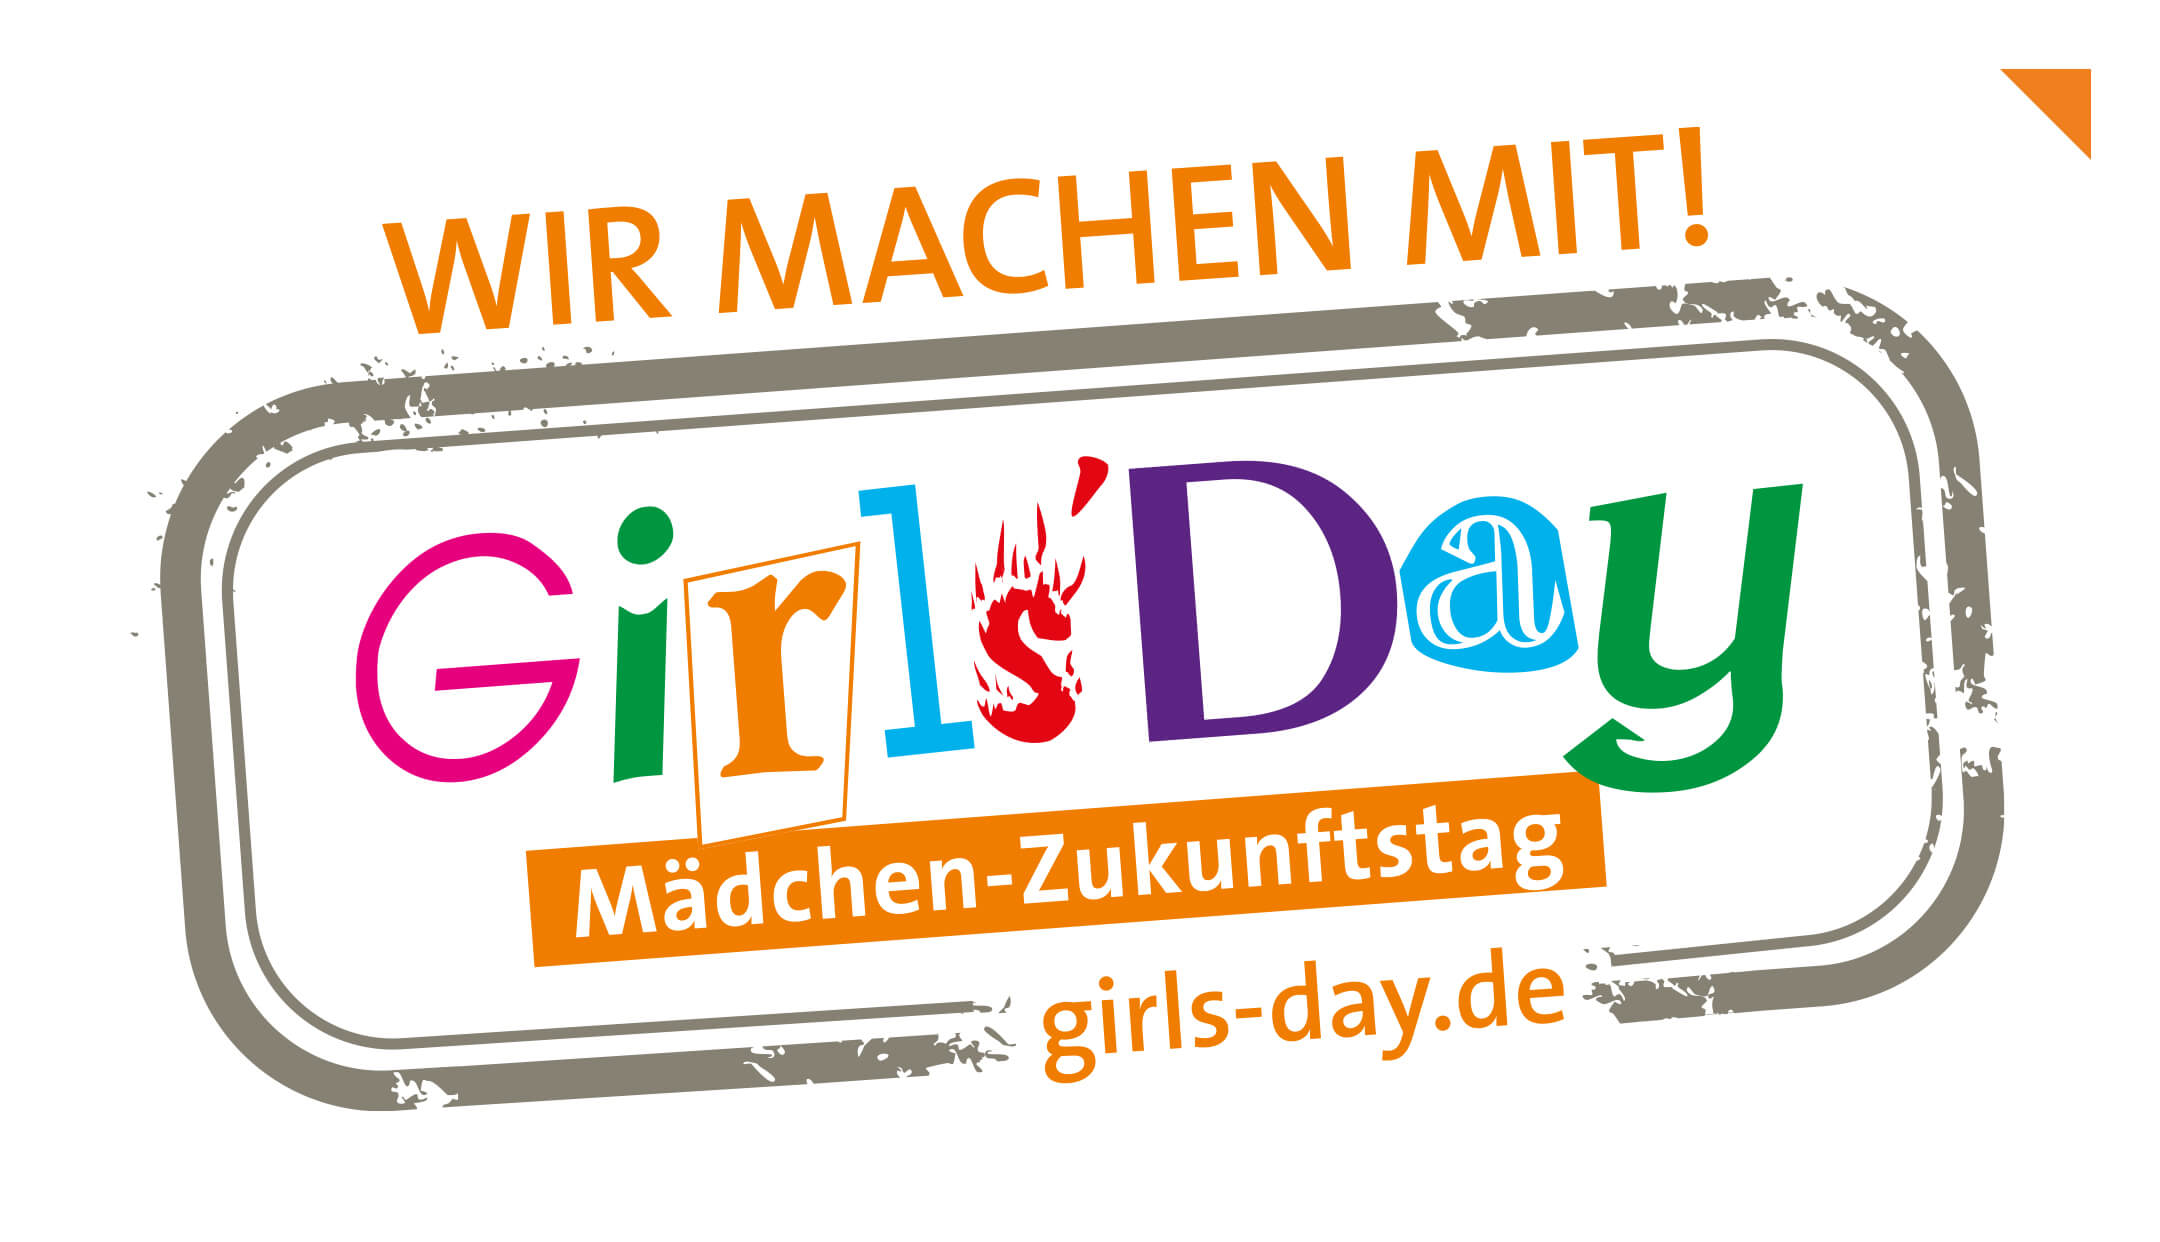 Mehr IT-Security-Spezialistinnen in der Zukunft – usd beteiligt sich am Girls‘Day 2022